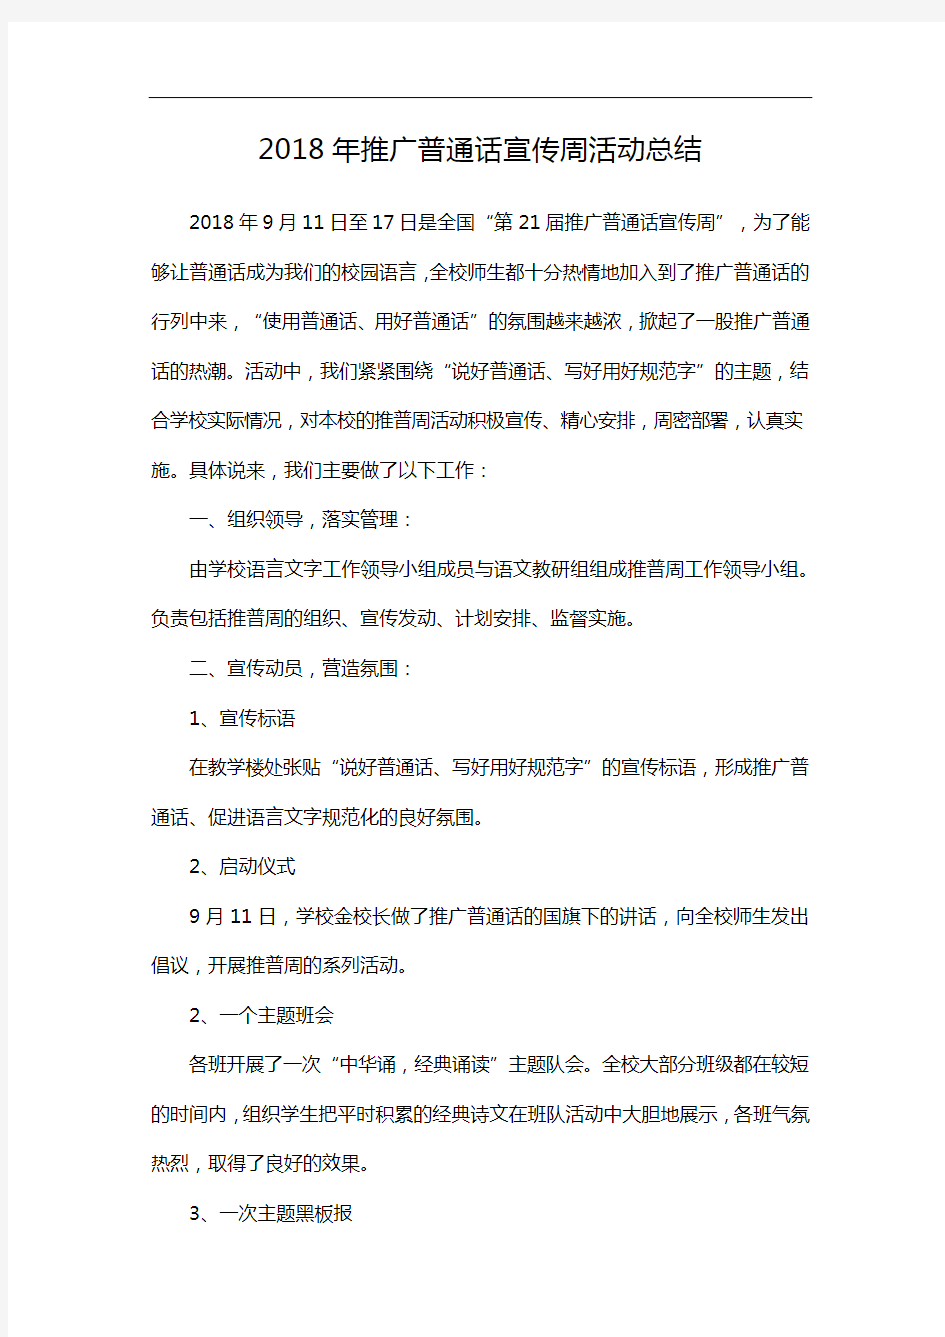 2018年推广普通话宣传周活动总结